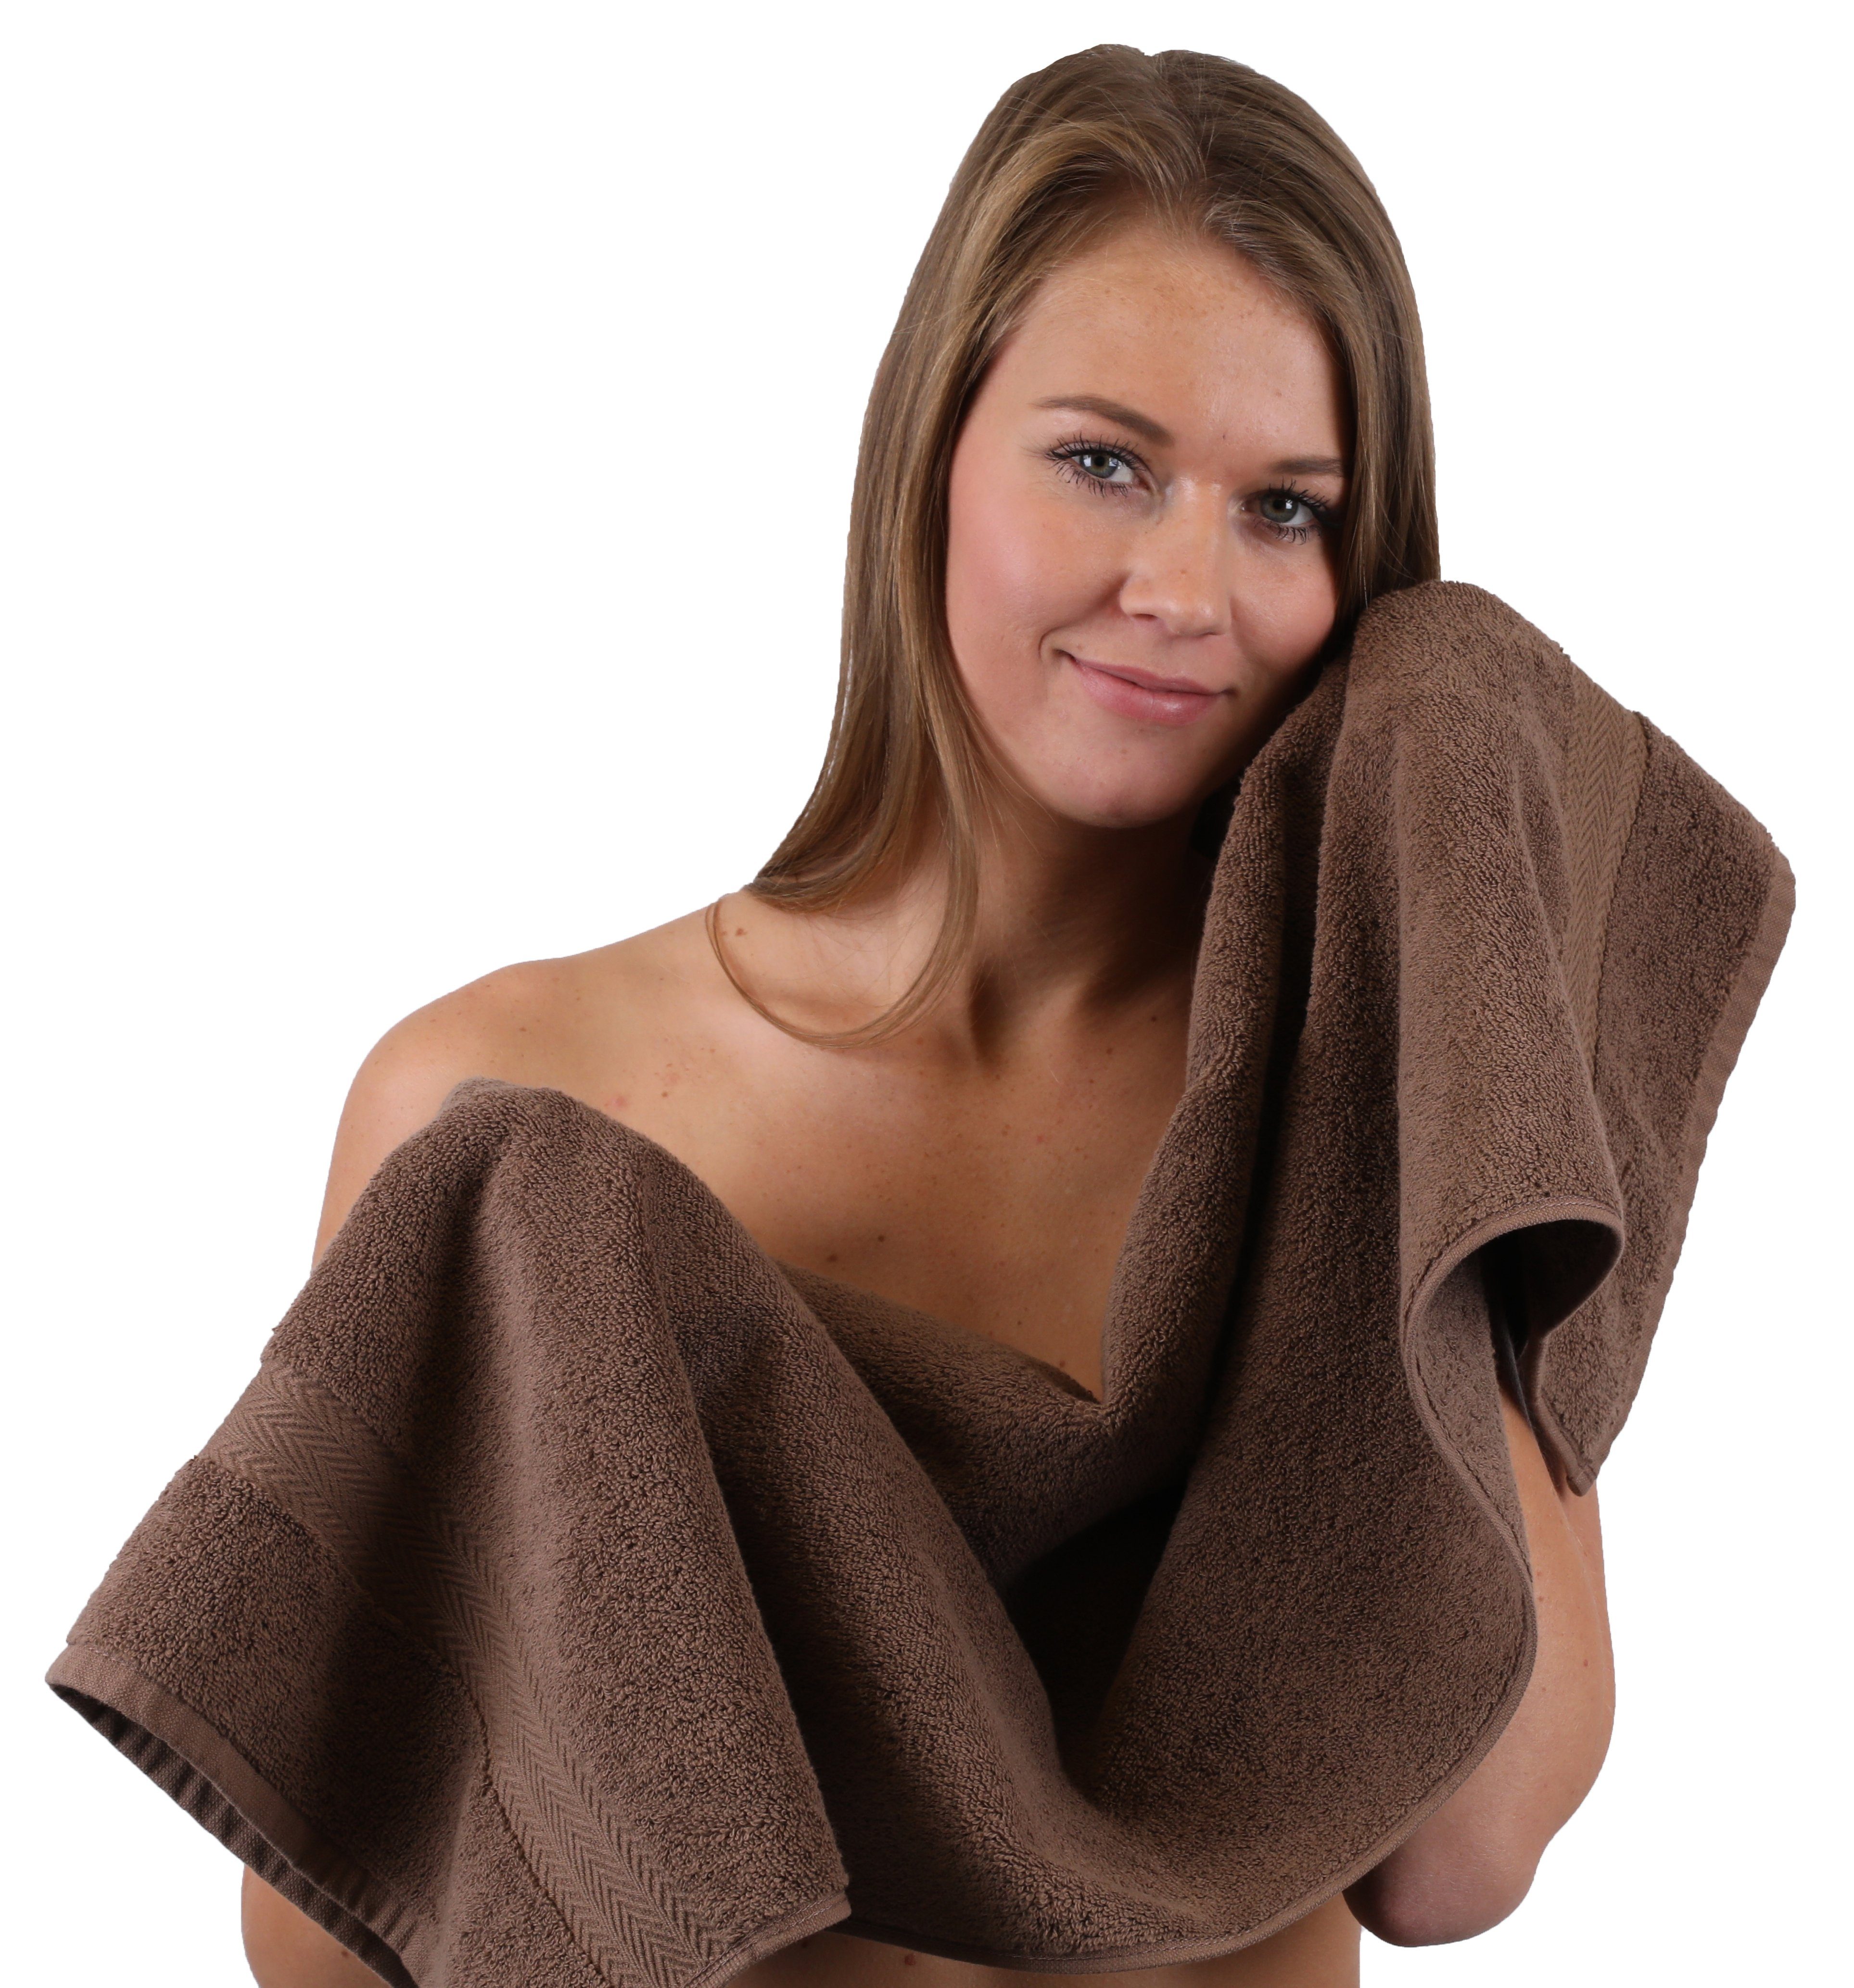 & Schwarz Betz 10-TLG. 100% Handtuch-Set Baumwolle, Handtuch Premium Set Nussbraun, (10-tlg) Farbe